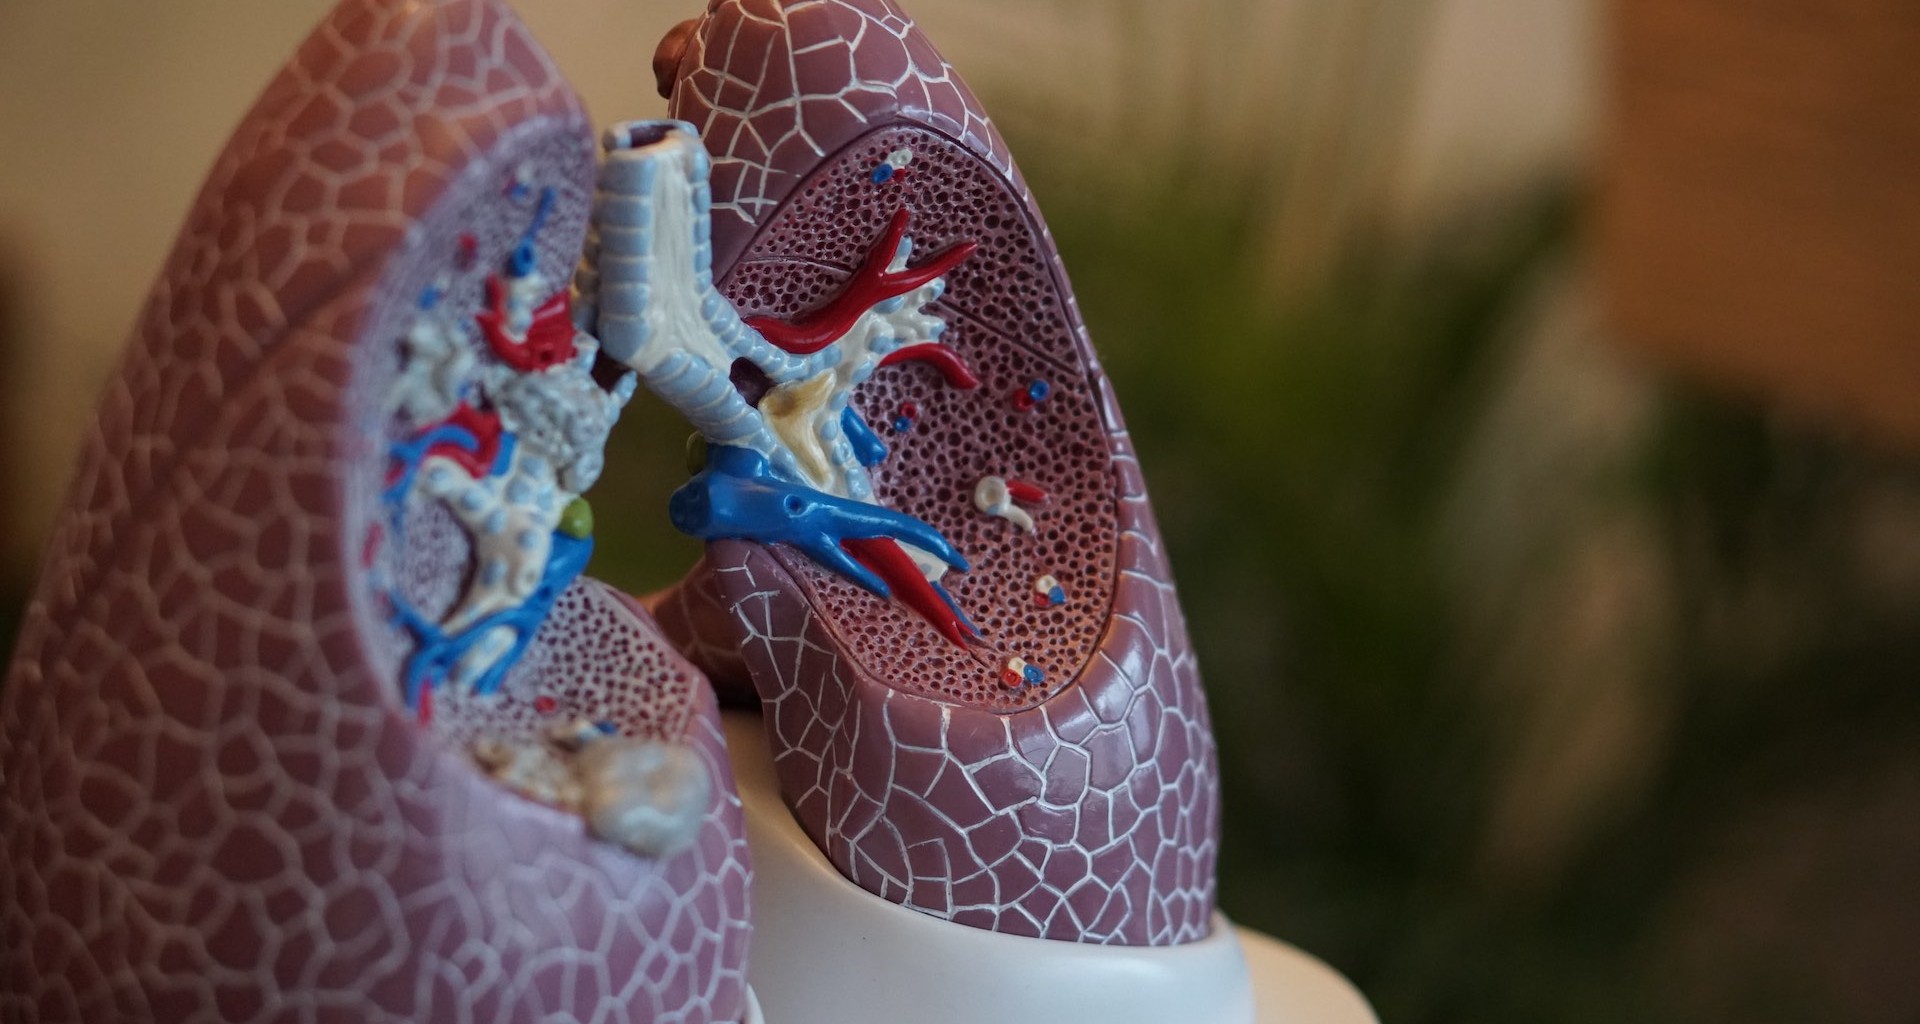 Mejora en respirador artificial puede salvar vidas